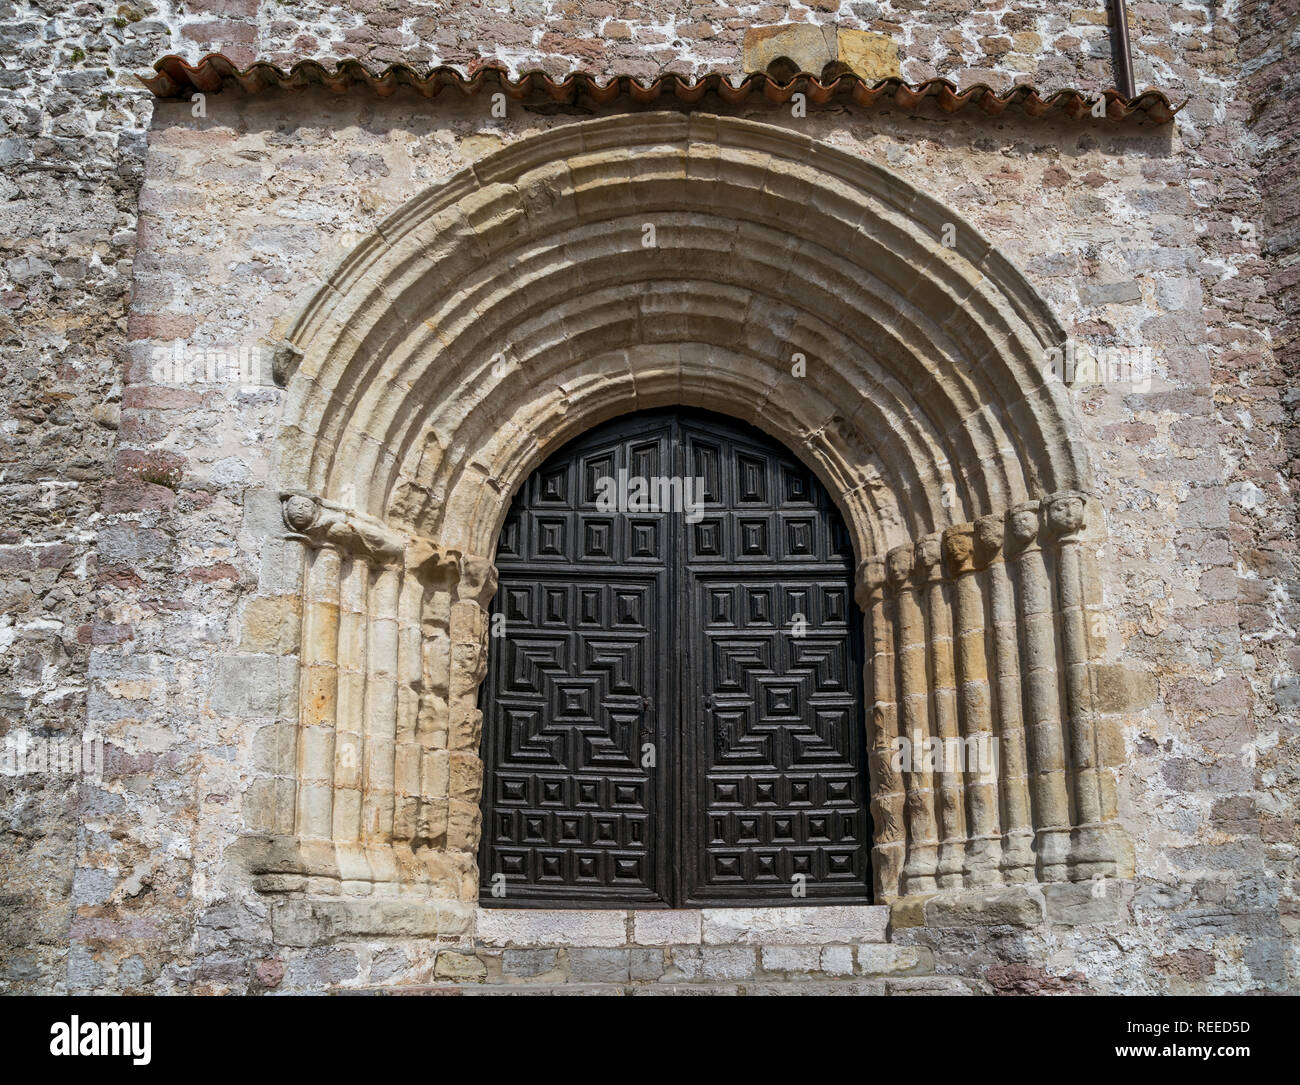 Romanesque portal of Iglesia de Santa María del Conceyu in Llanes, Asturias, Spain Stock Photo